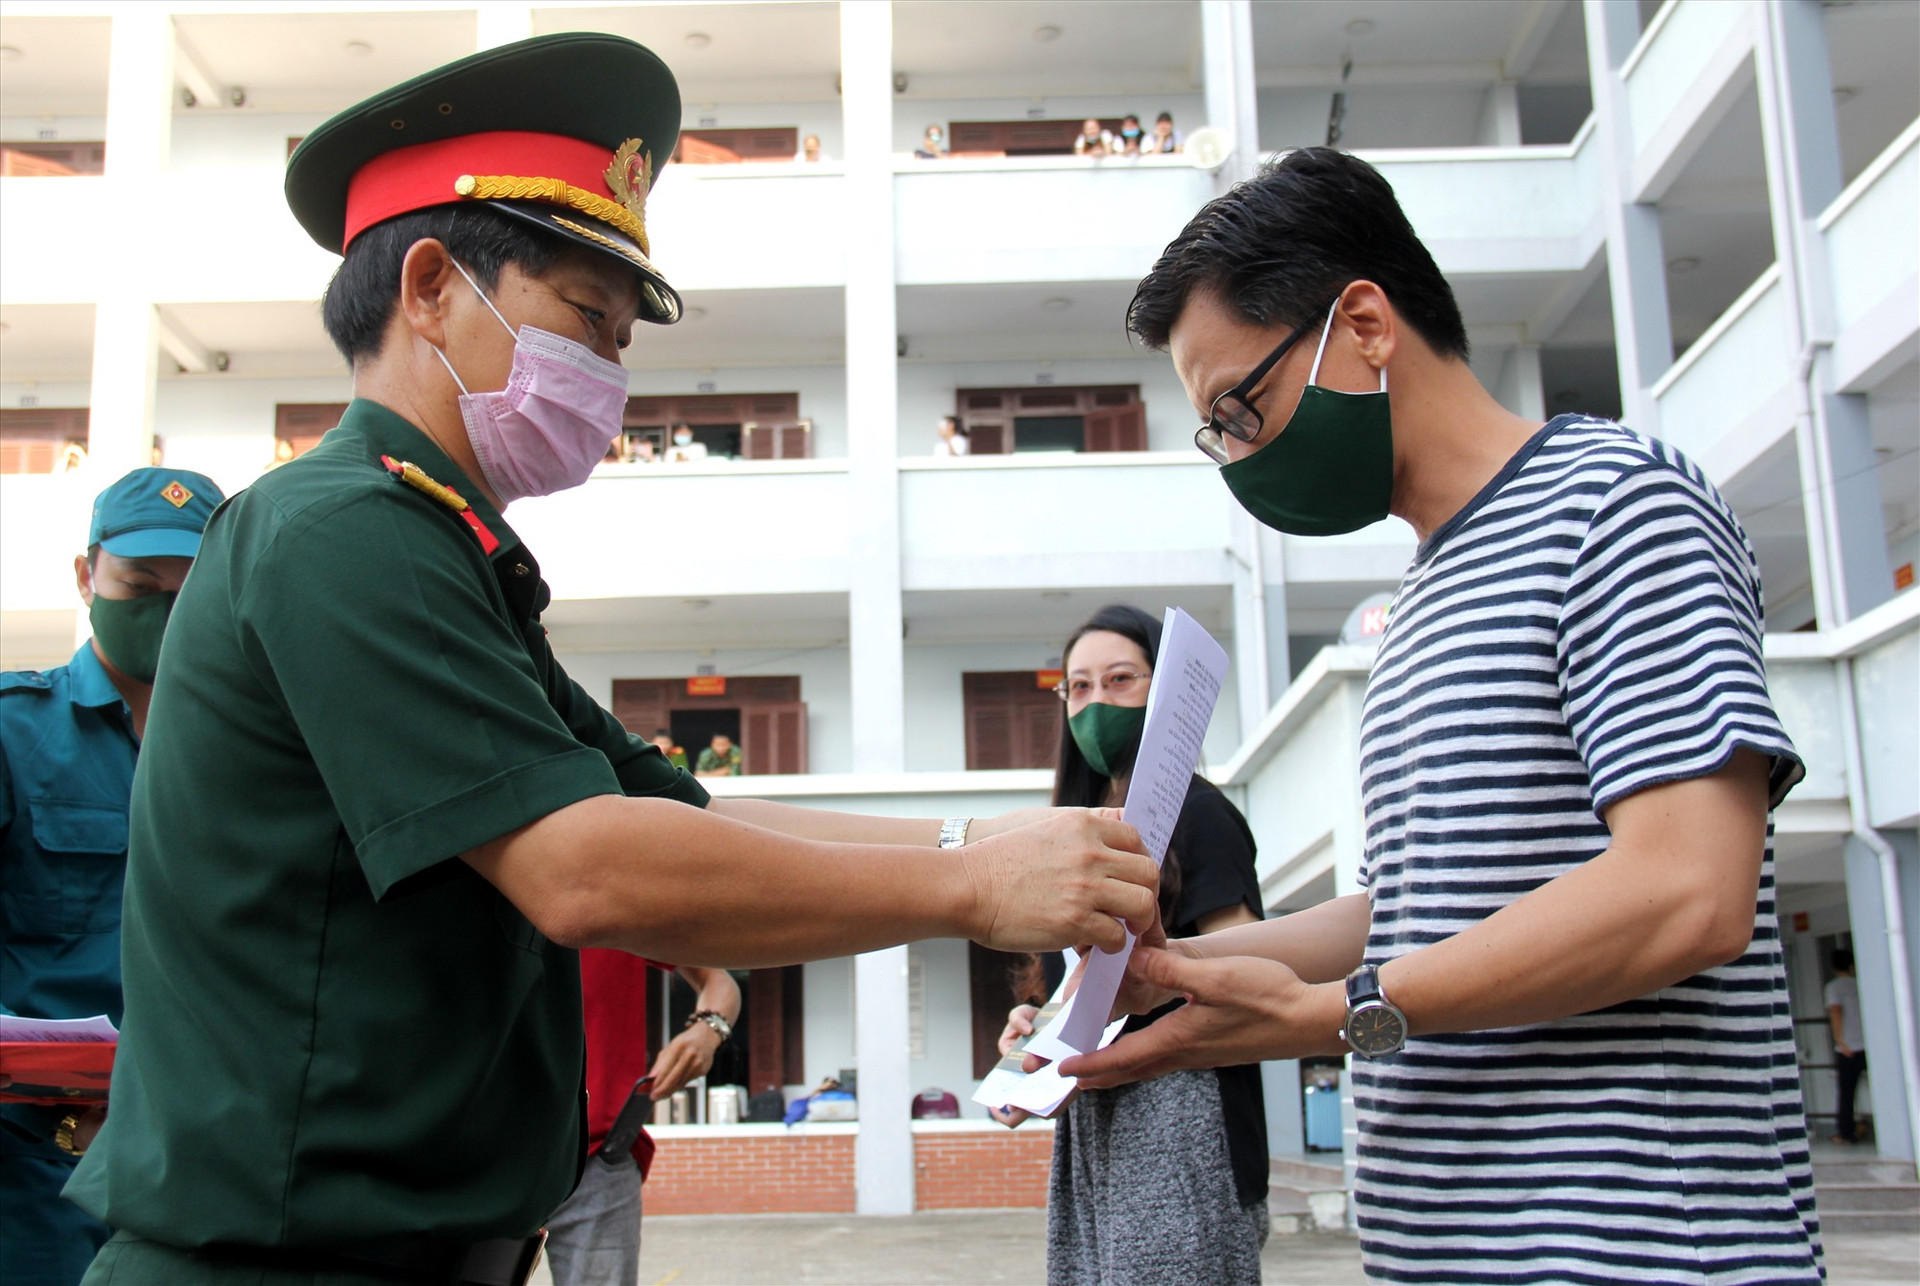 Đại tá Nguyễn Hữu Nghĩa - Phó Chỉ huy trưởng Bộ Chỉ huy Quân sự tỉnh trao chứng nhận hoàn thành cách ly cho các công dân. Ảnh: A.N